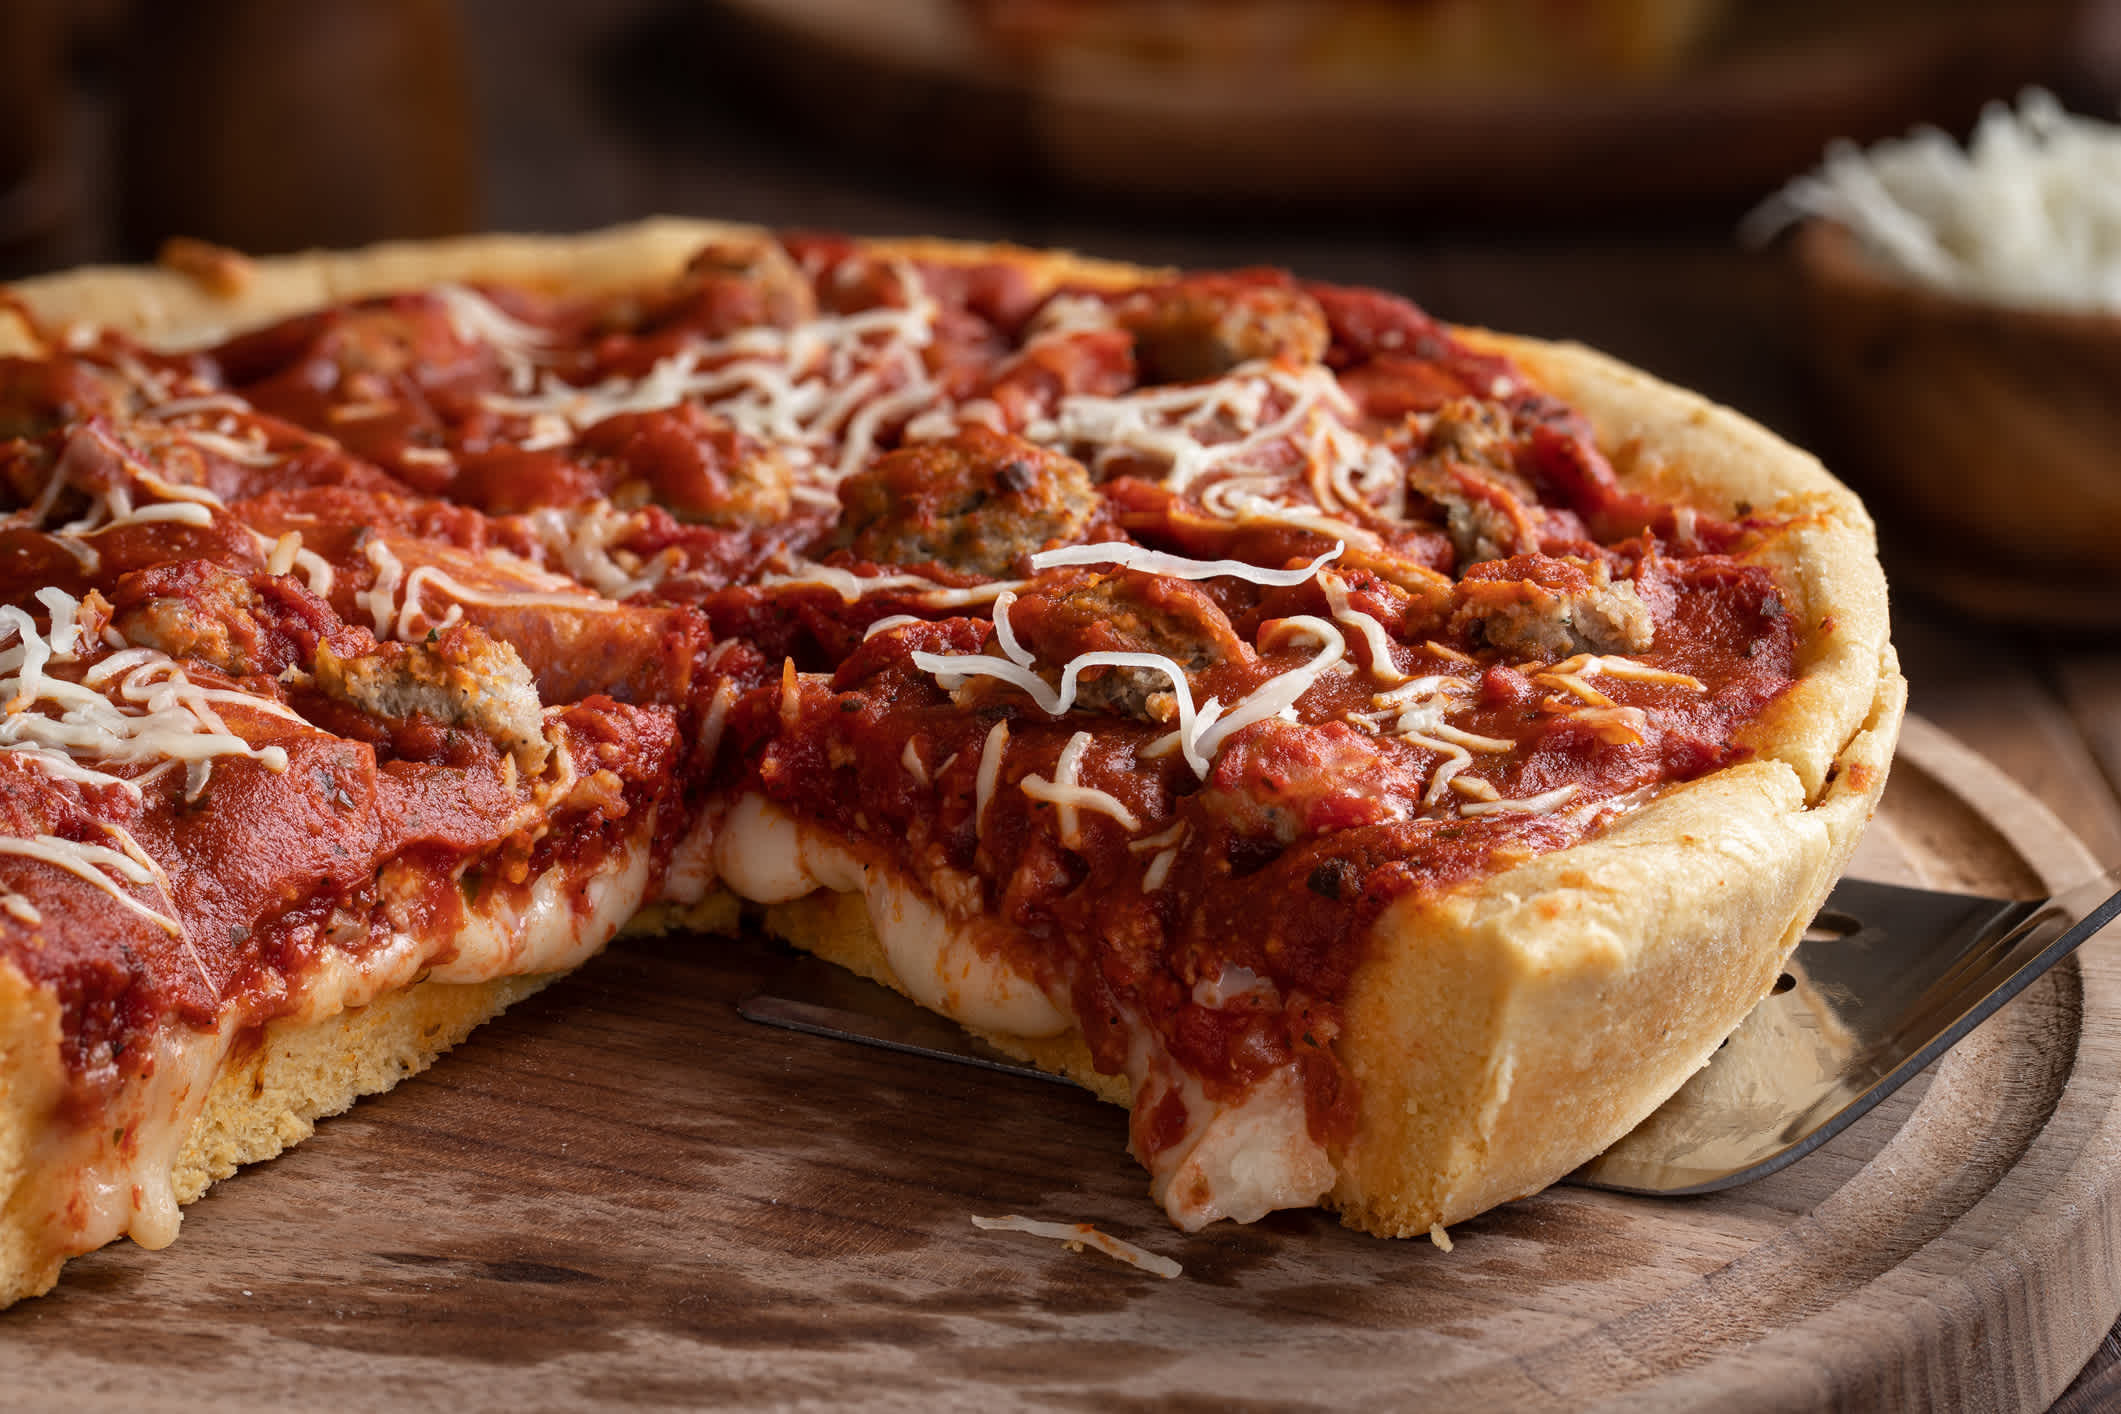 Nahaufnahme einer Pizza nach Chicagoer Art auf einer Holzplatte.

